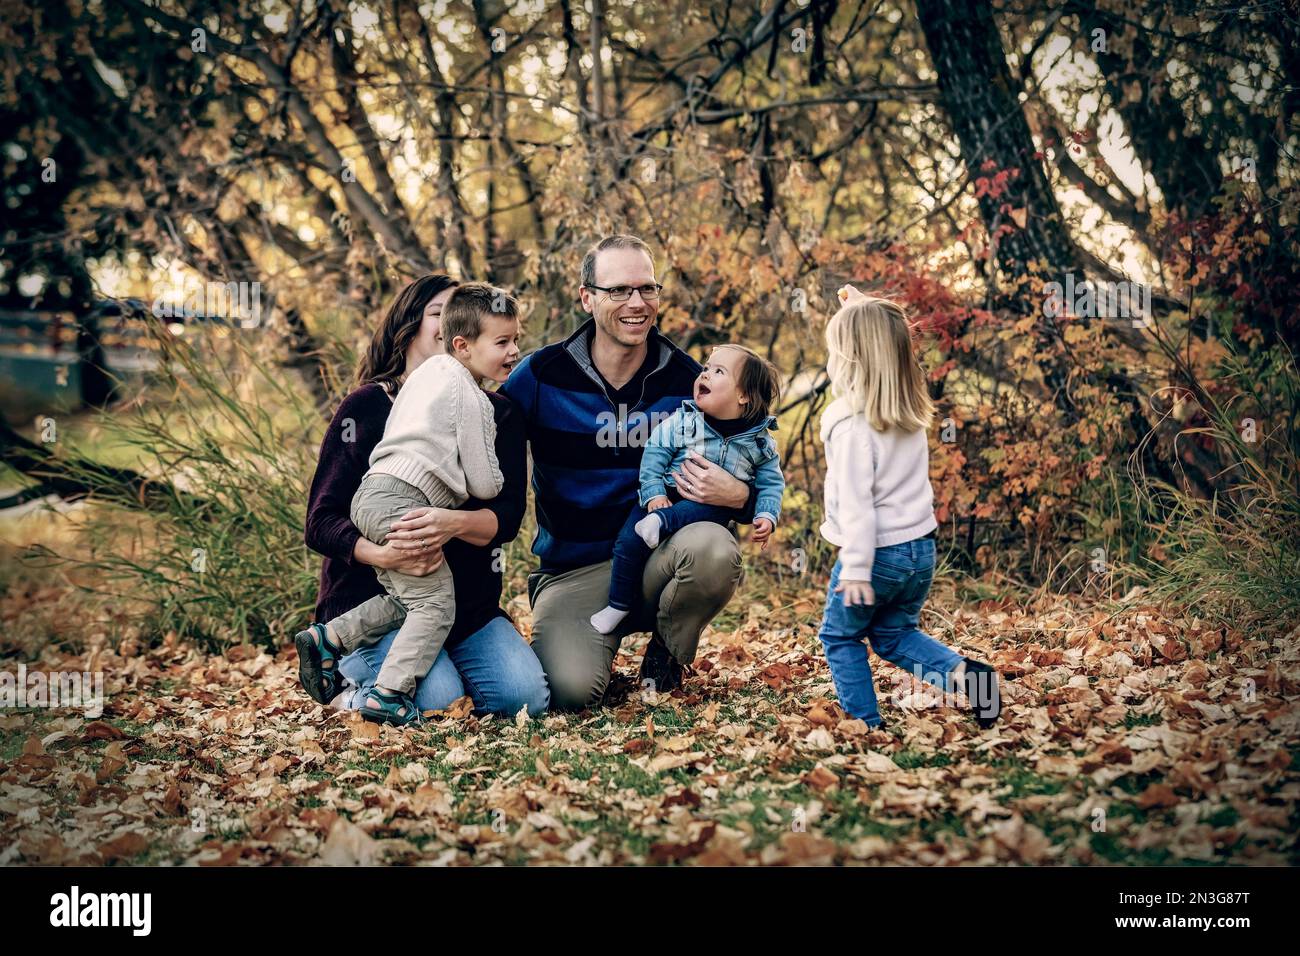 Junge Familie mit drei Kindern, jüngste Tochter mit Down-Syndrom, die in der Herbstsaison gemeinsam in einem Stadtpark Spaß hat Stockfoto